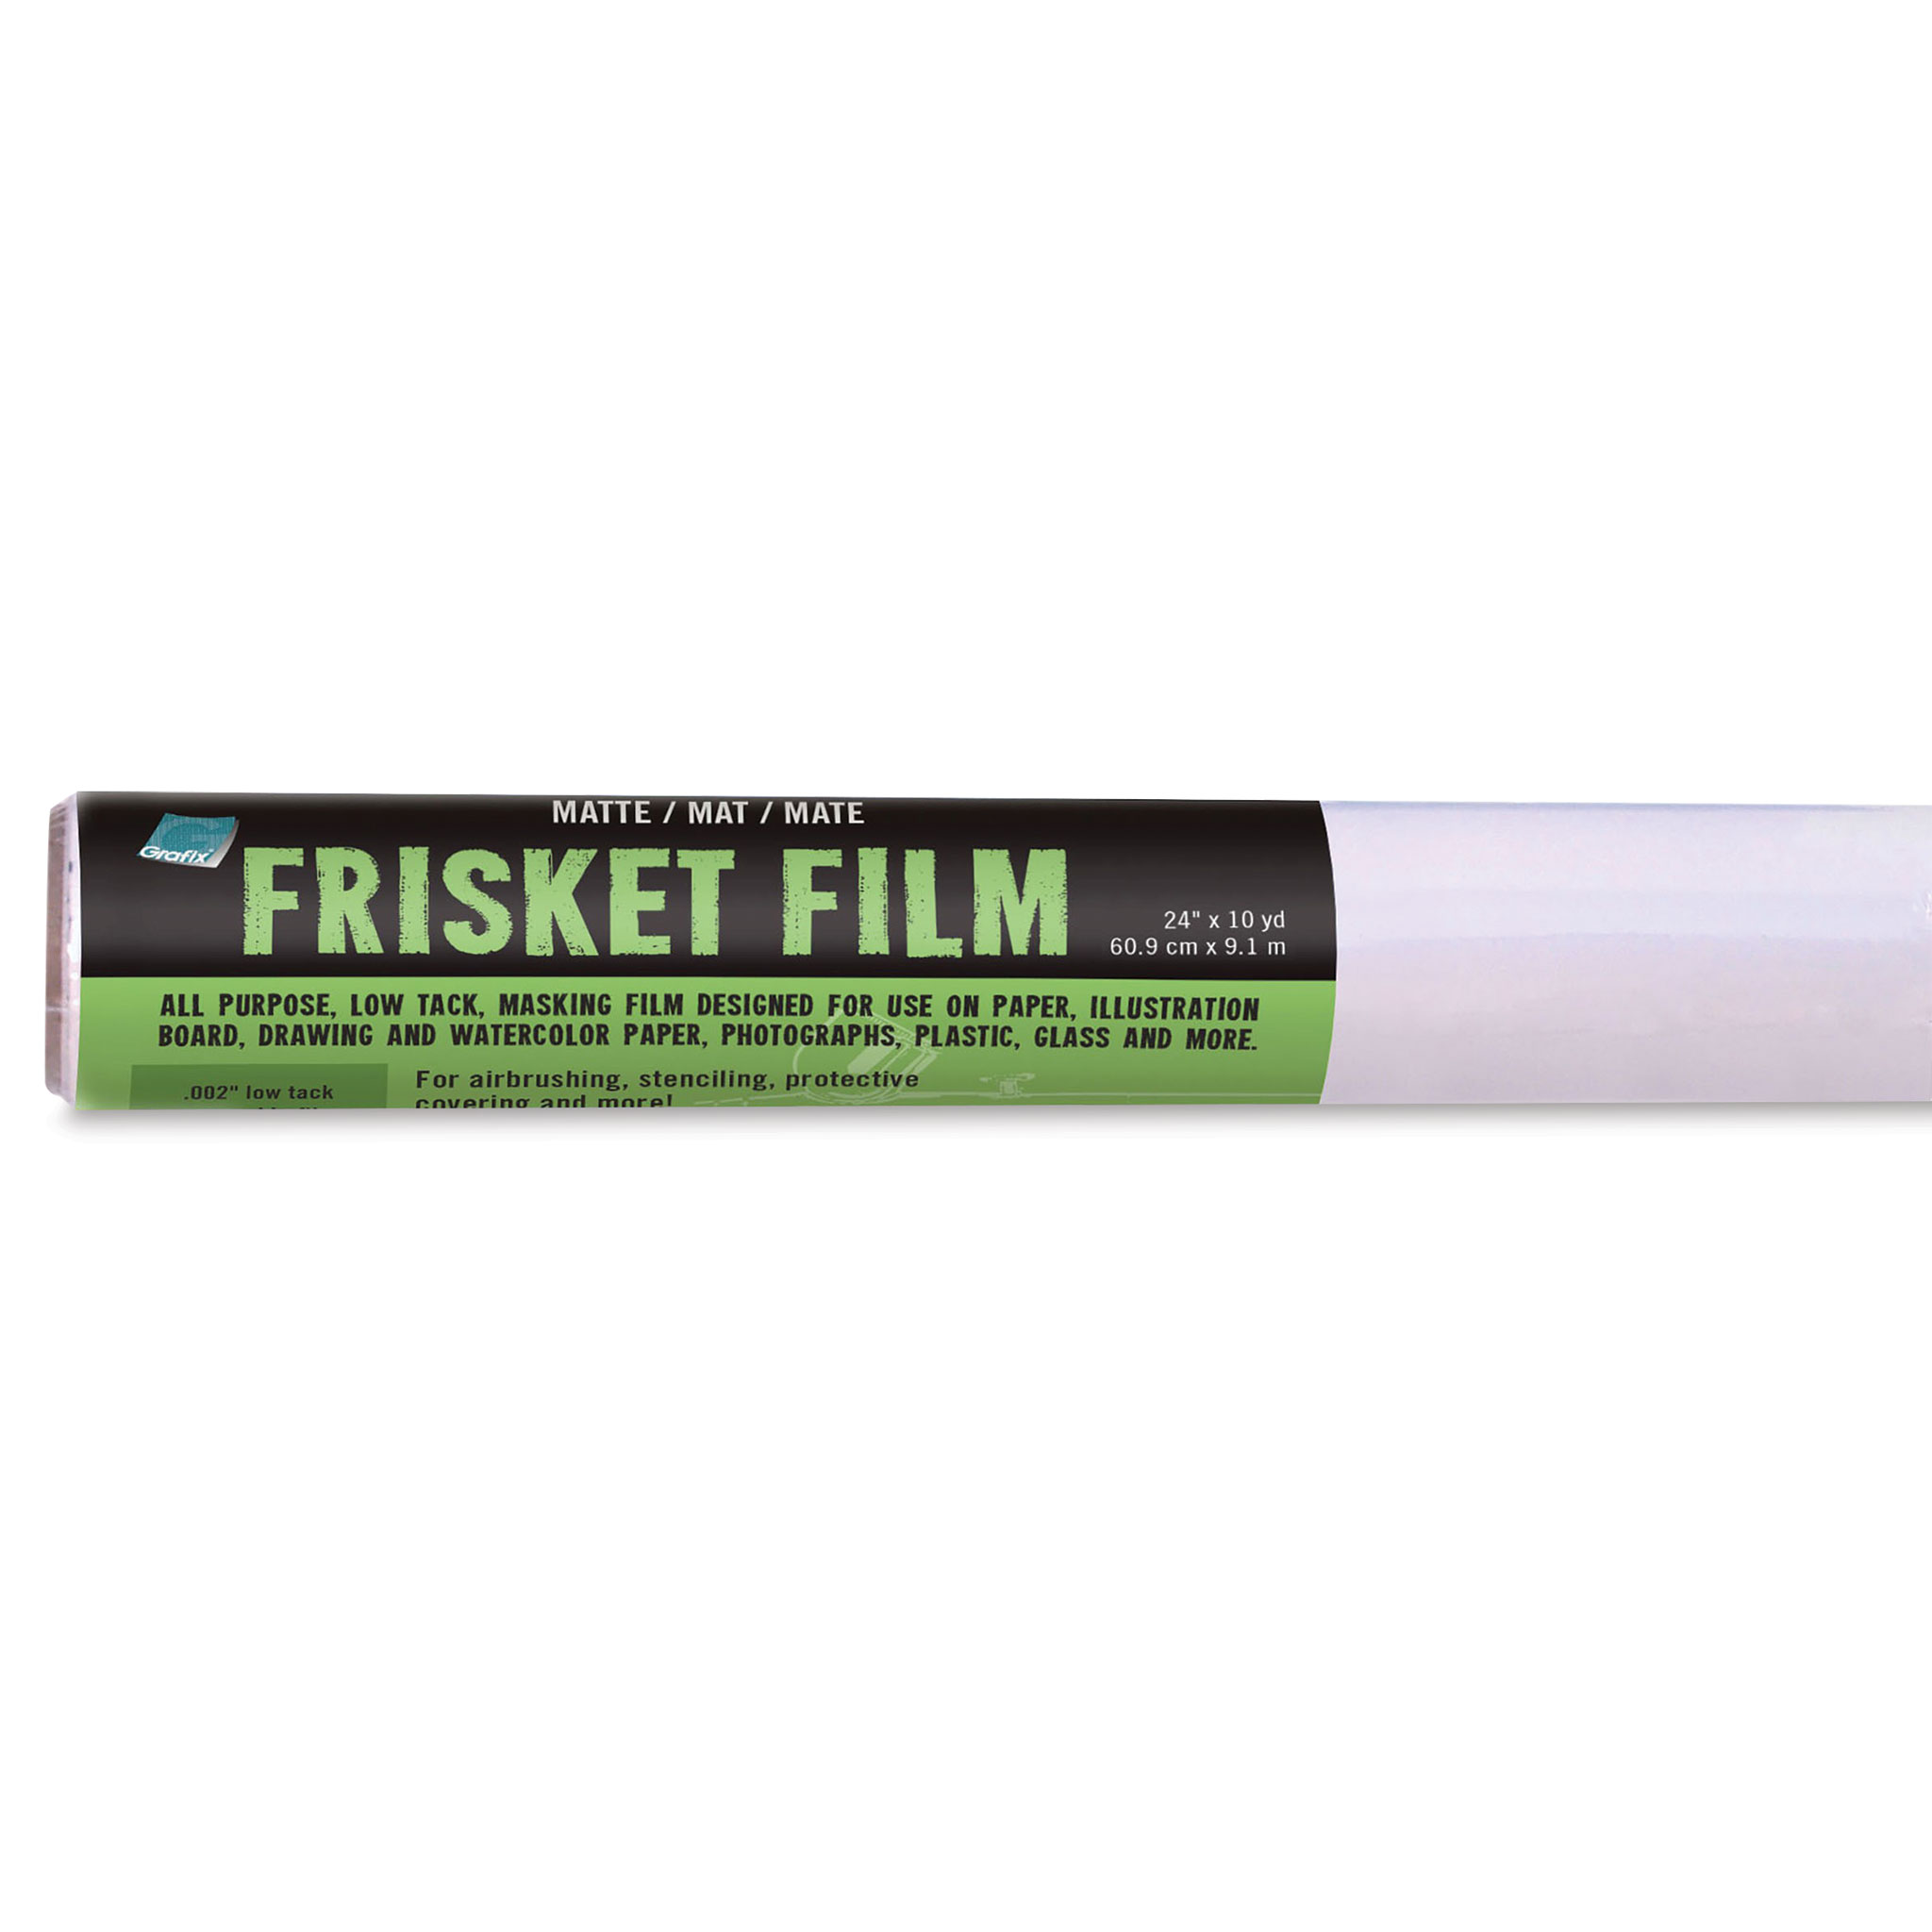 Armadillo Original Frisket Film Roll 10x4yds